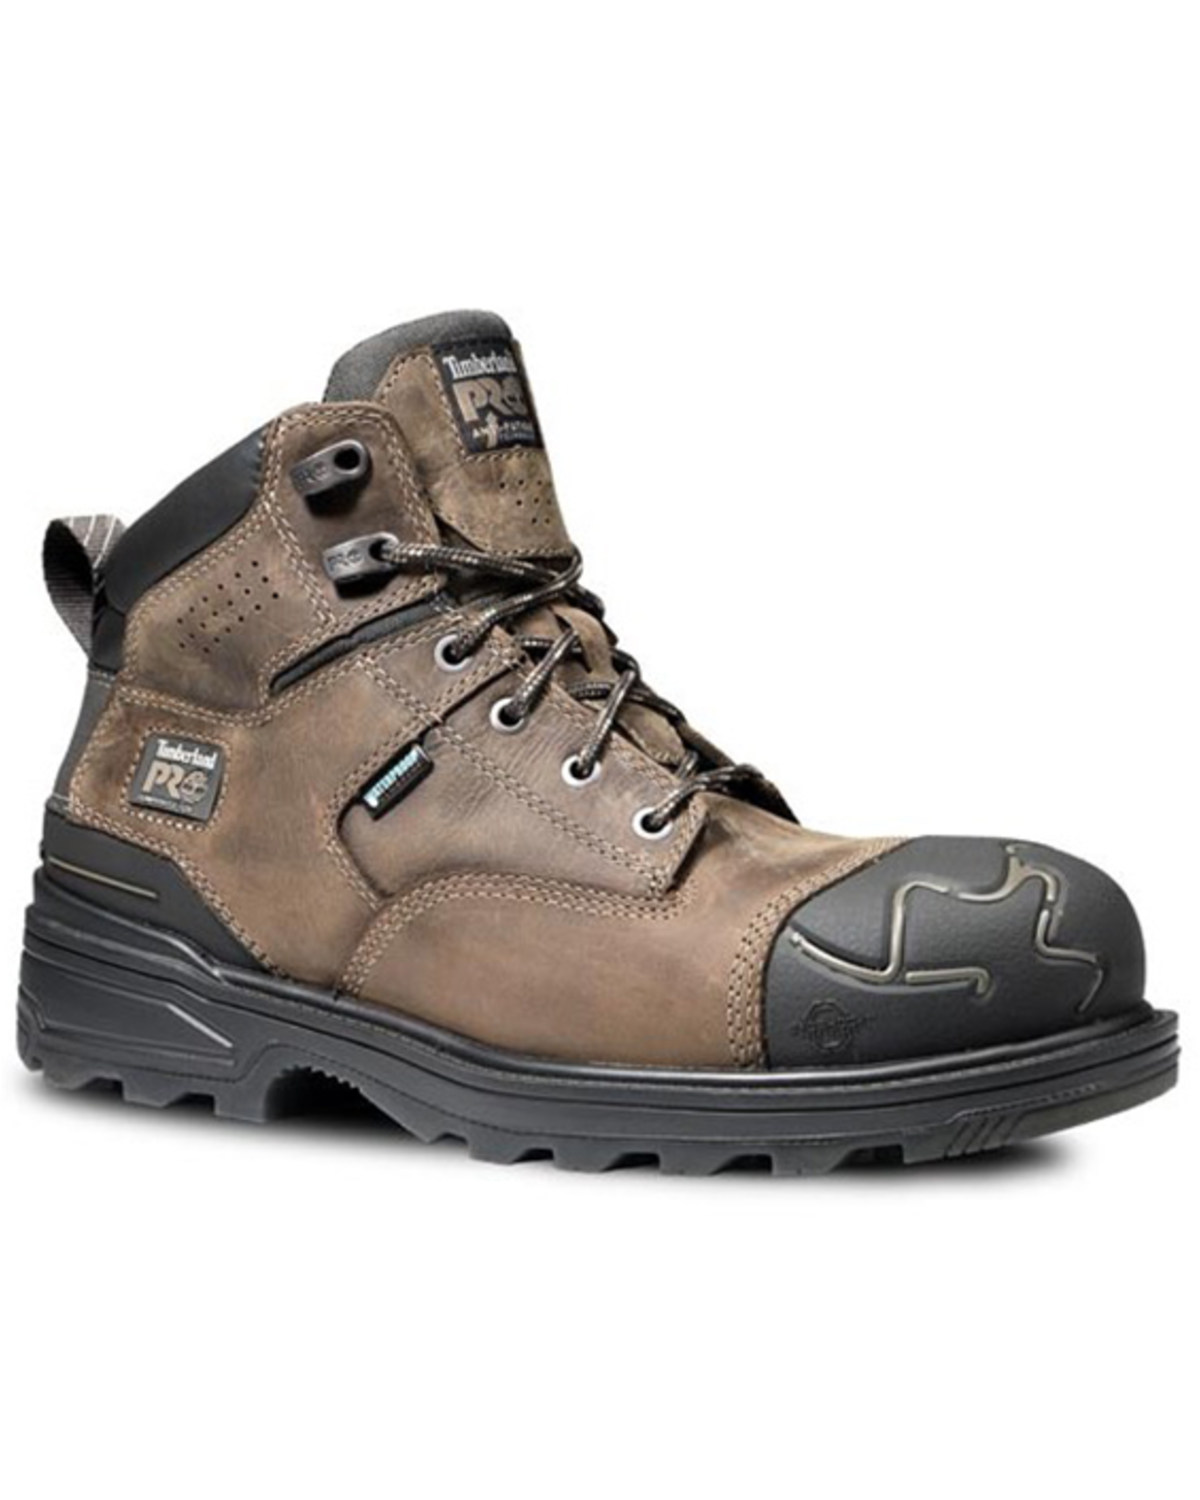 Timberland Men's Magnitude 6" Waterproof Work Boots - Composite Toe